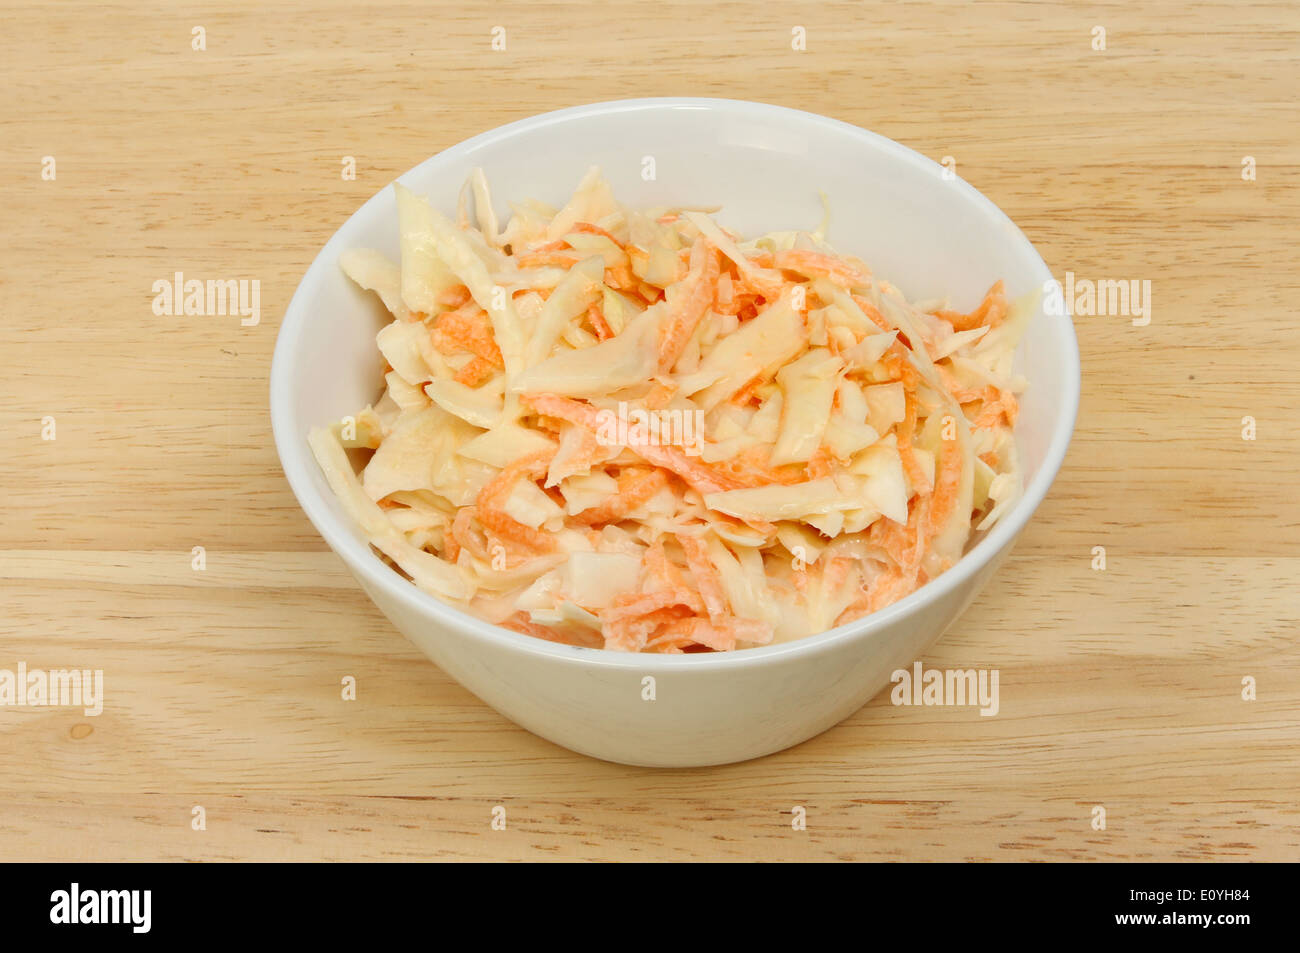 Coleslaw insalata in una ciotola bianco su una tavola di legno Foto Stock